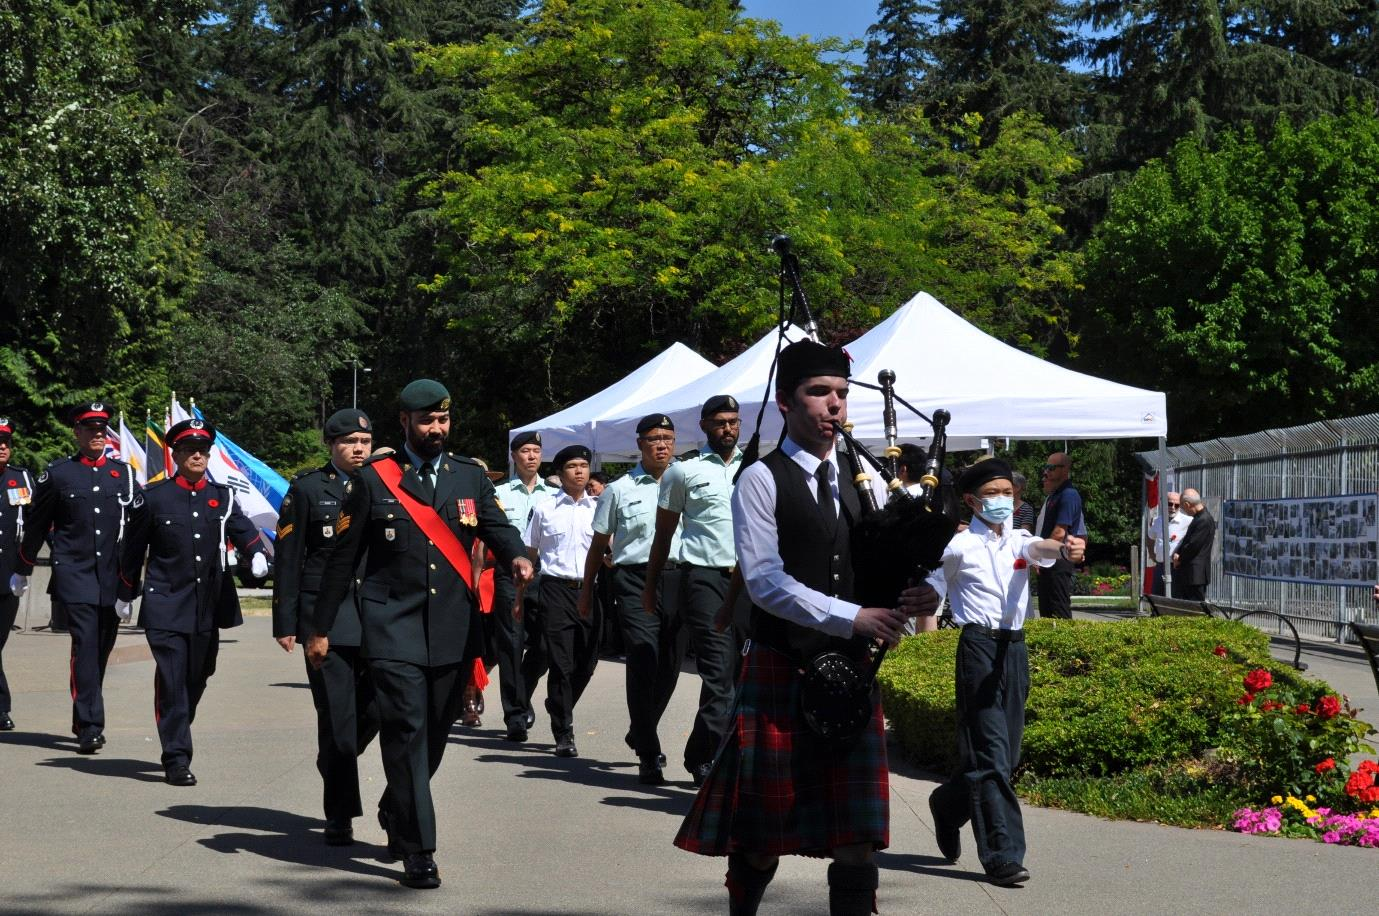 사진설명 : 캐나다 서부지역 한국전 참전용사의 날 행사현장